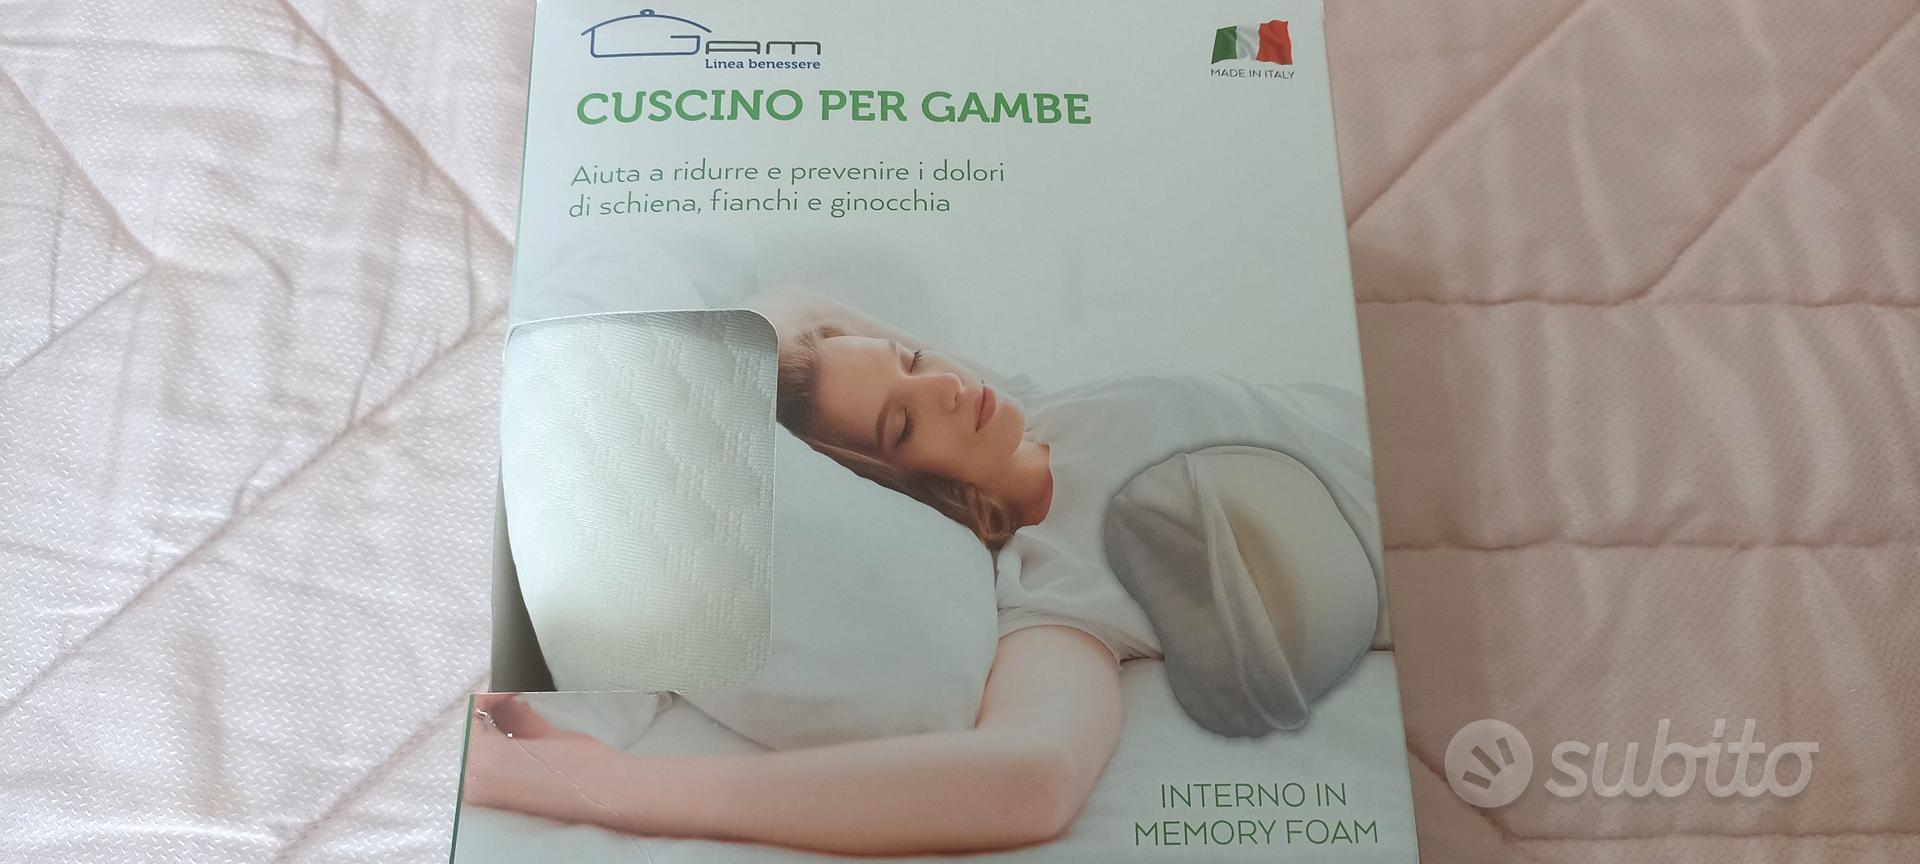 Cuscino Ortopedico per Gambe - Arredamento e Casalinghi In vendita a Palermo